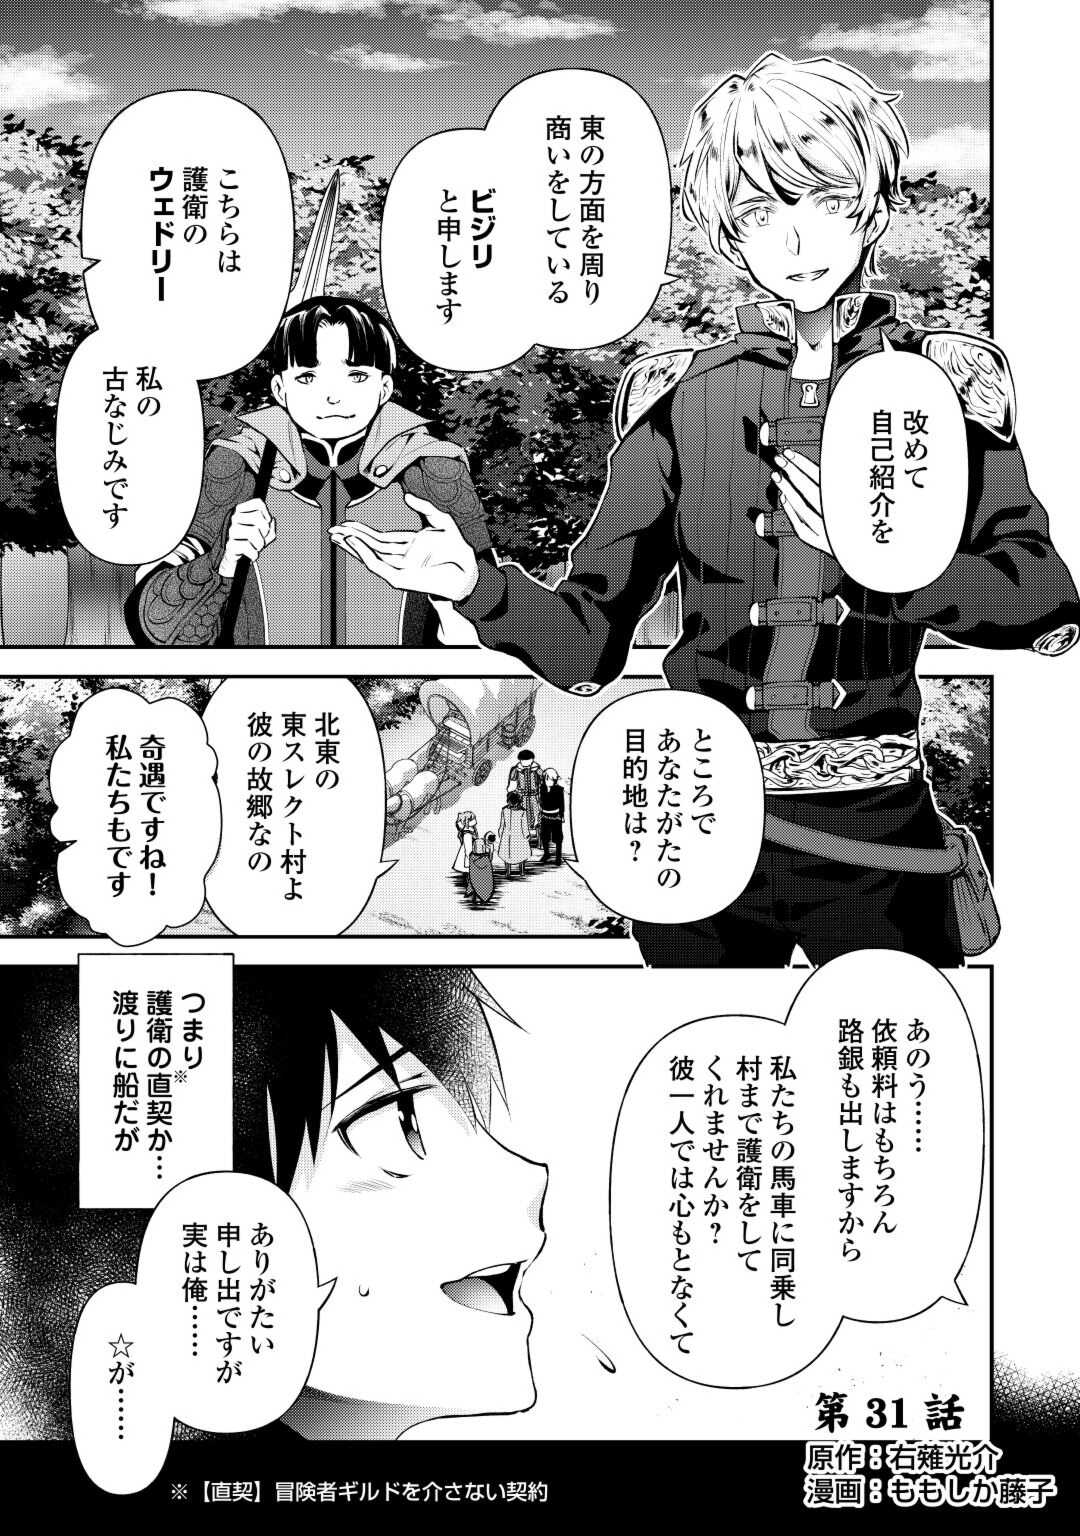 Ochikobore 1 Mahou Tsukai wa, Kyou mo Muishiki ni Cheat o Tsukau - Chapter 31 - Page 1